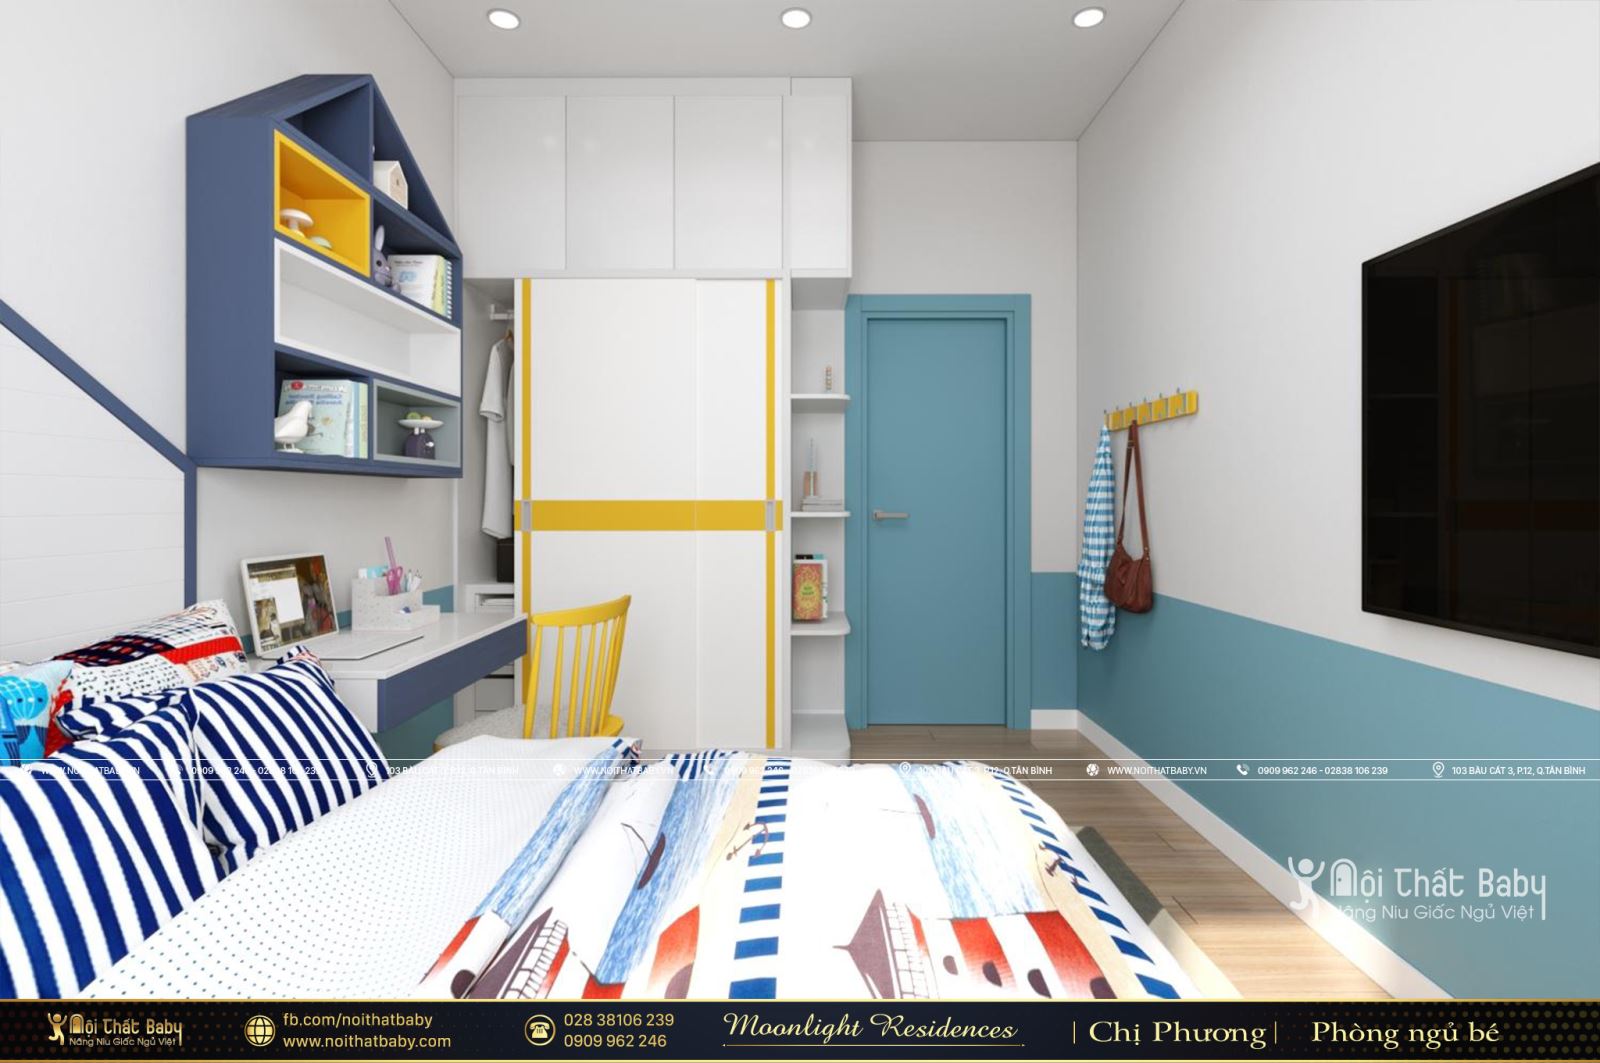 Tổng hợp các mẫu thiết kế nội thất chung cư Moonlight Residences